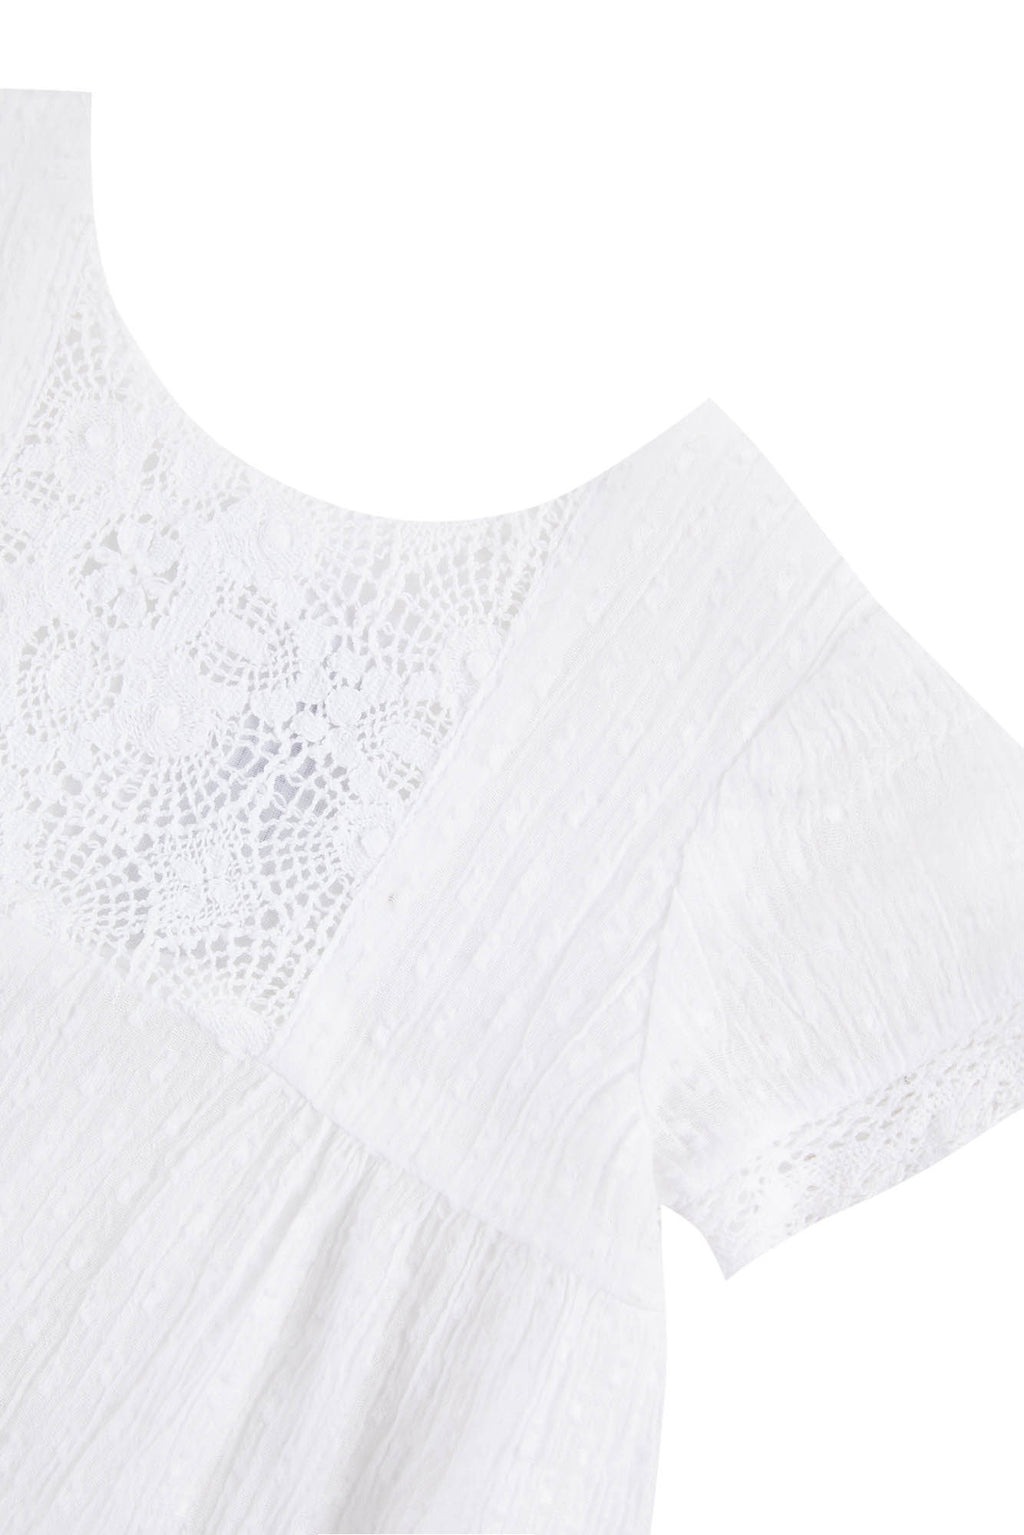 Dress - White English embroidery Plumetis